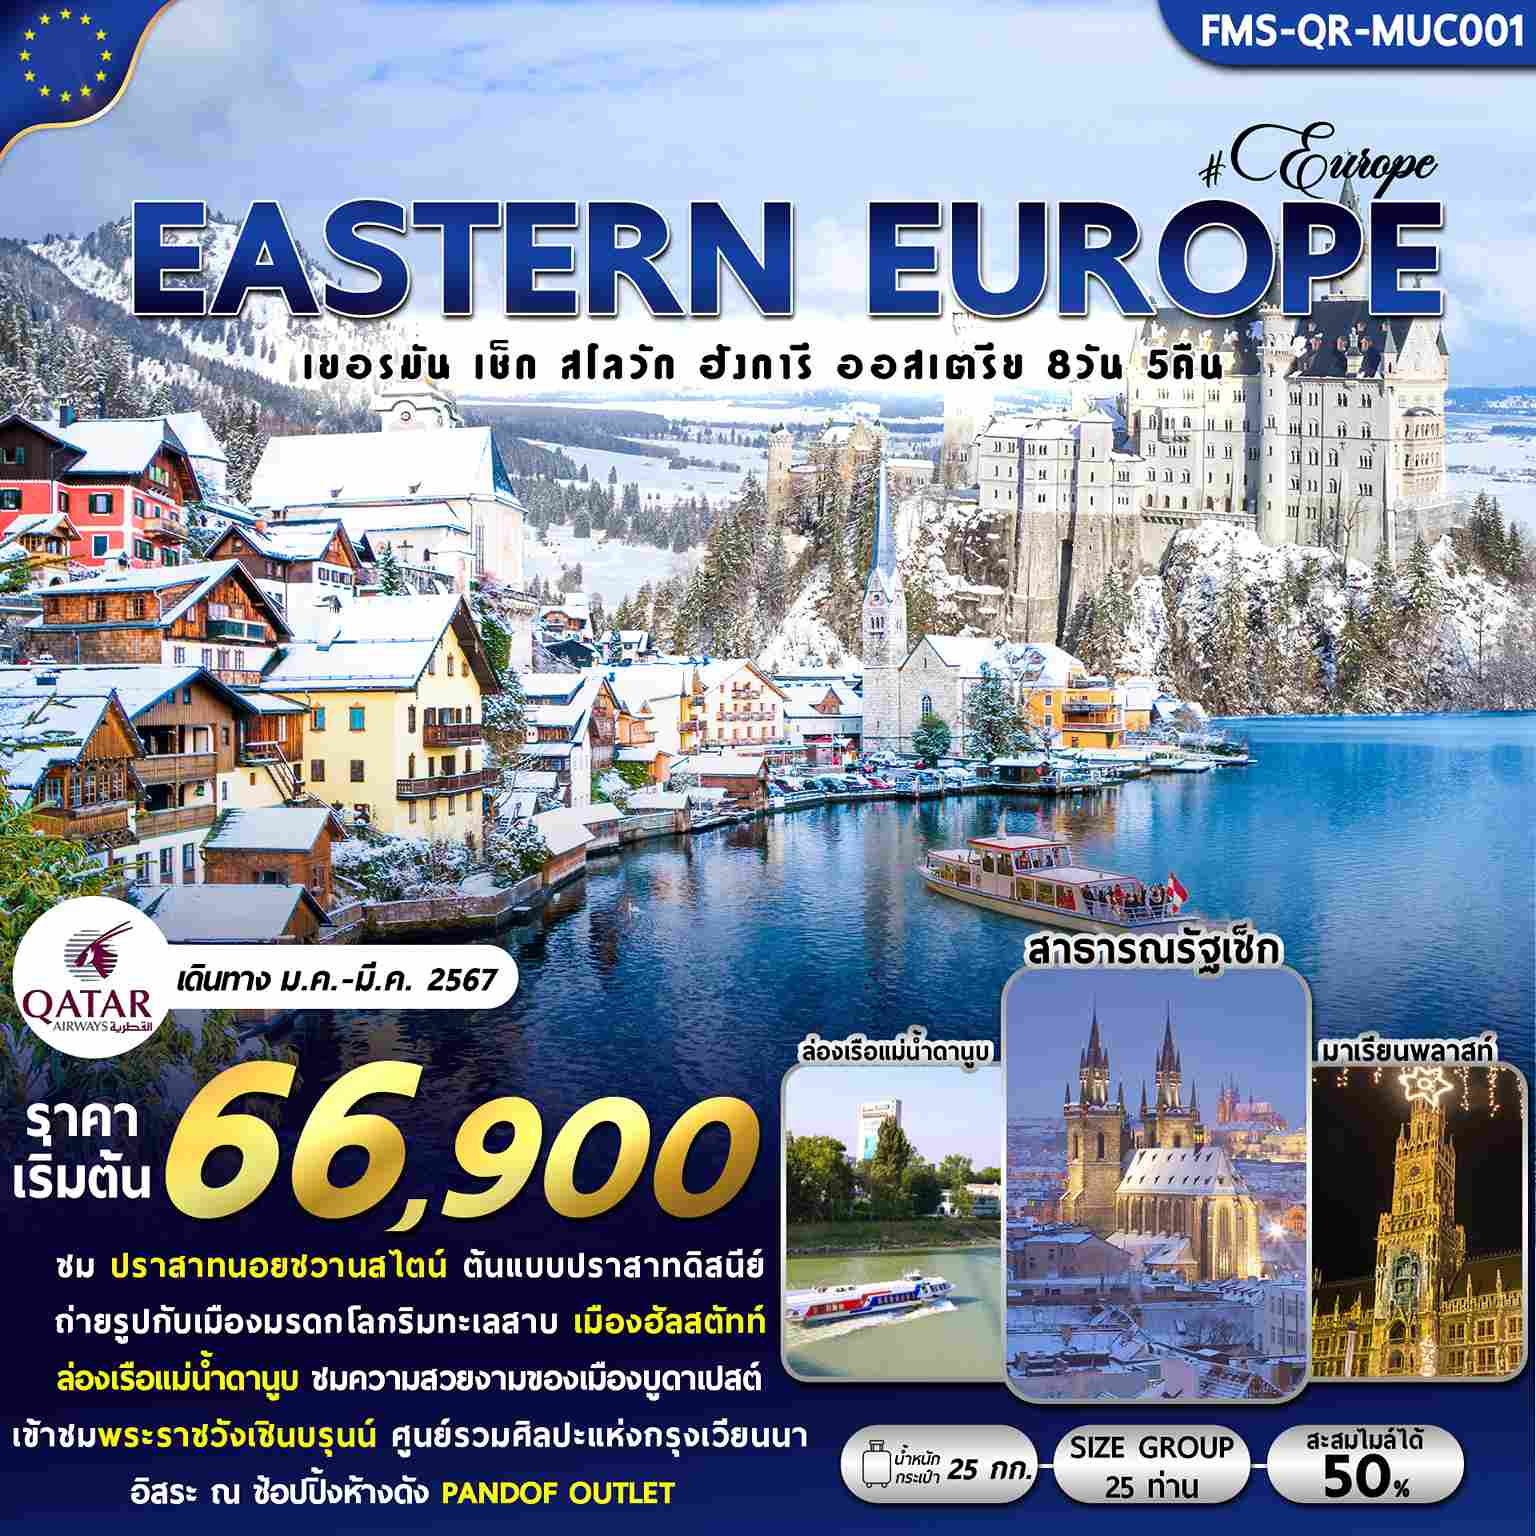 ทัวร์ยุโรป  AEU97-02 EASTERN EUROPE เที่ยวเมืองเทพนิยาย(220367)   